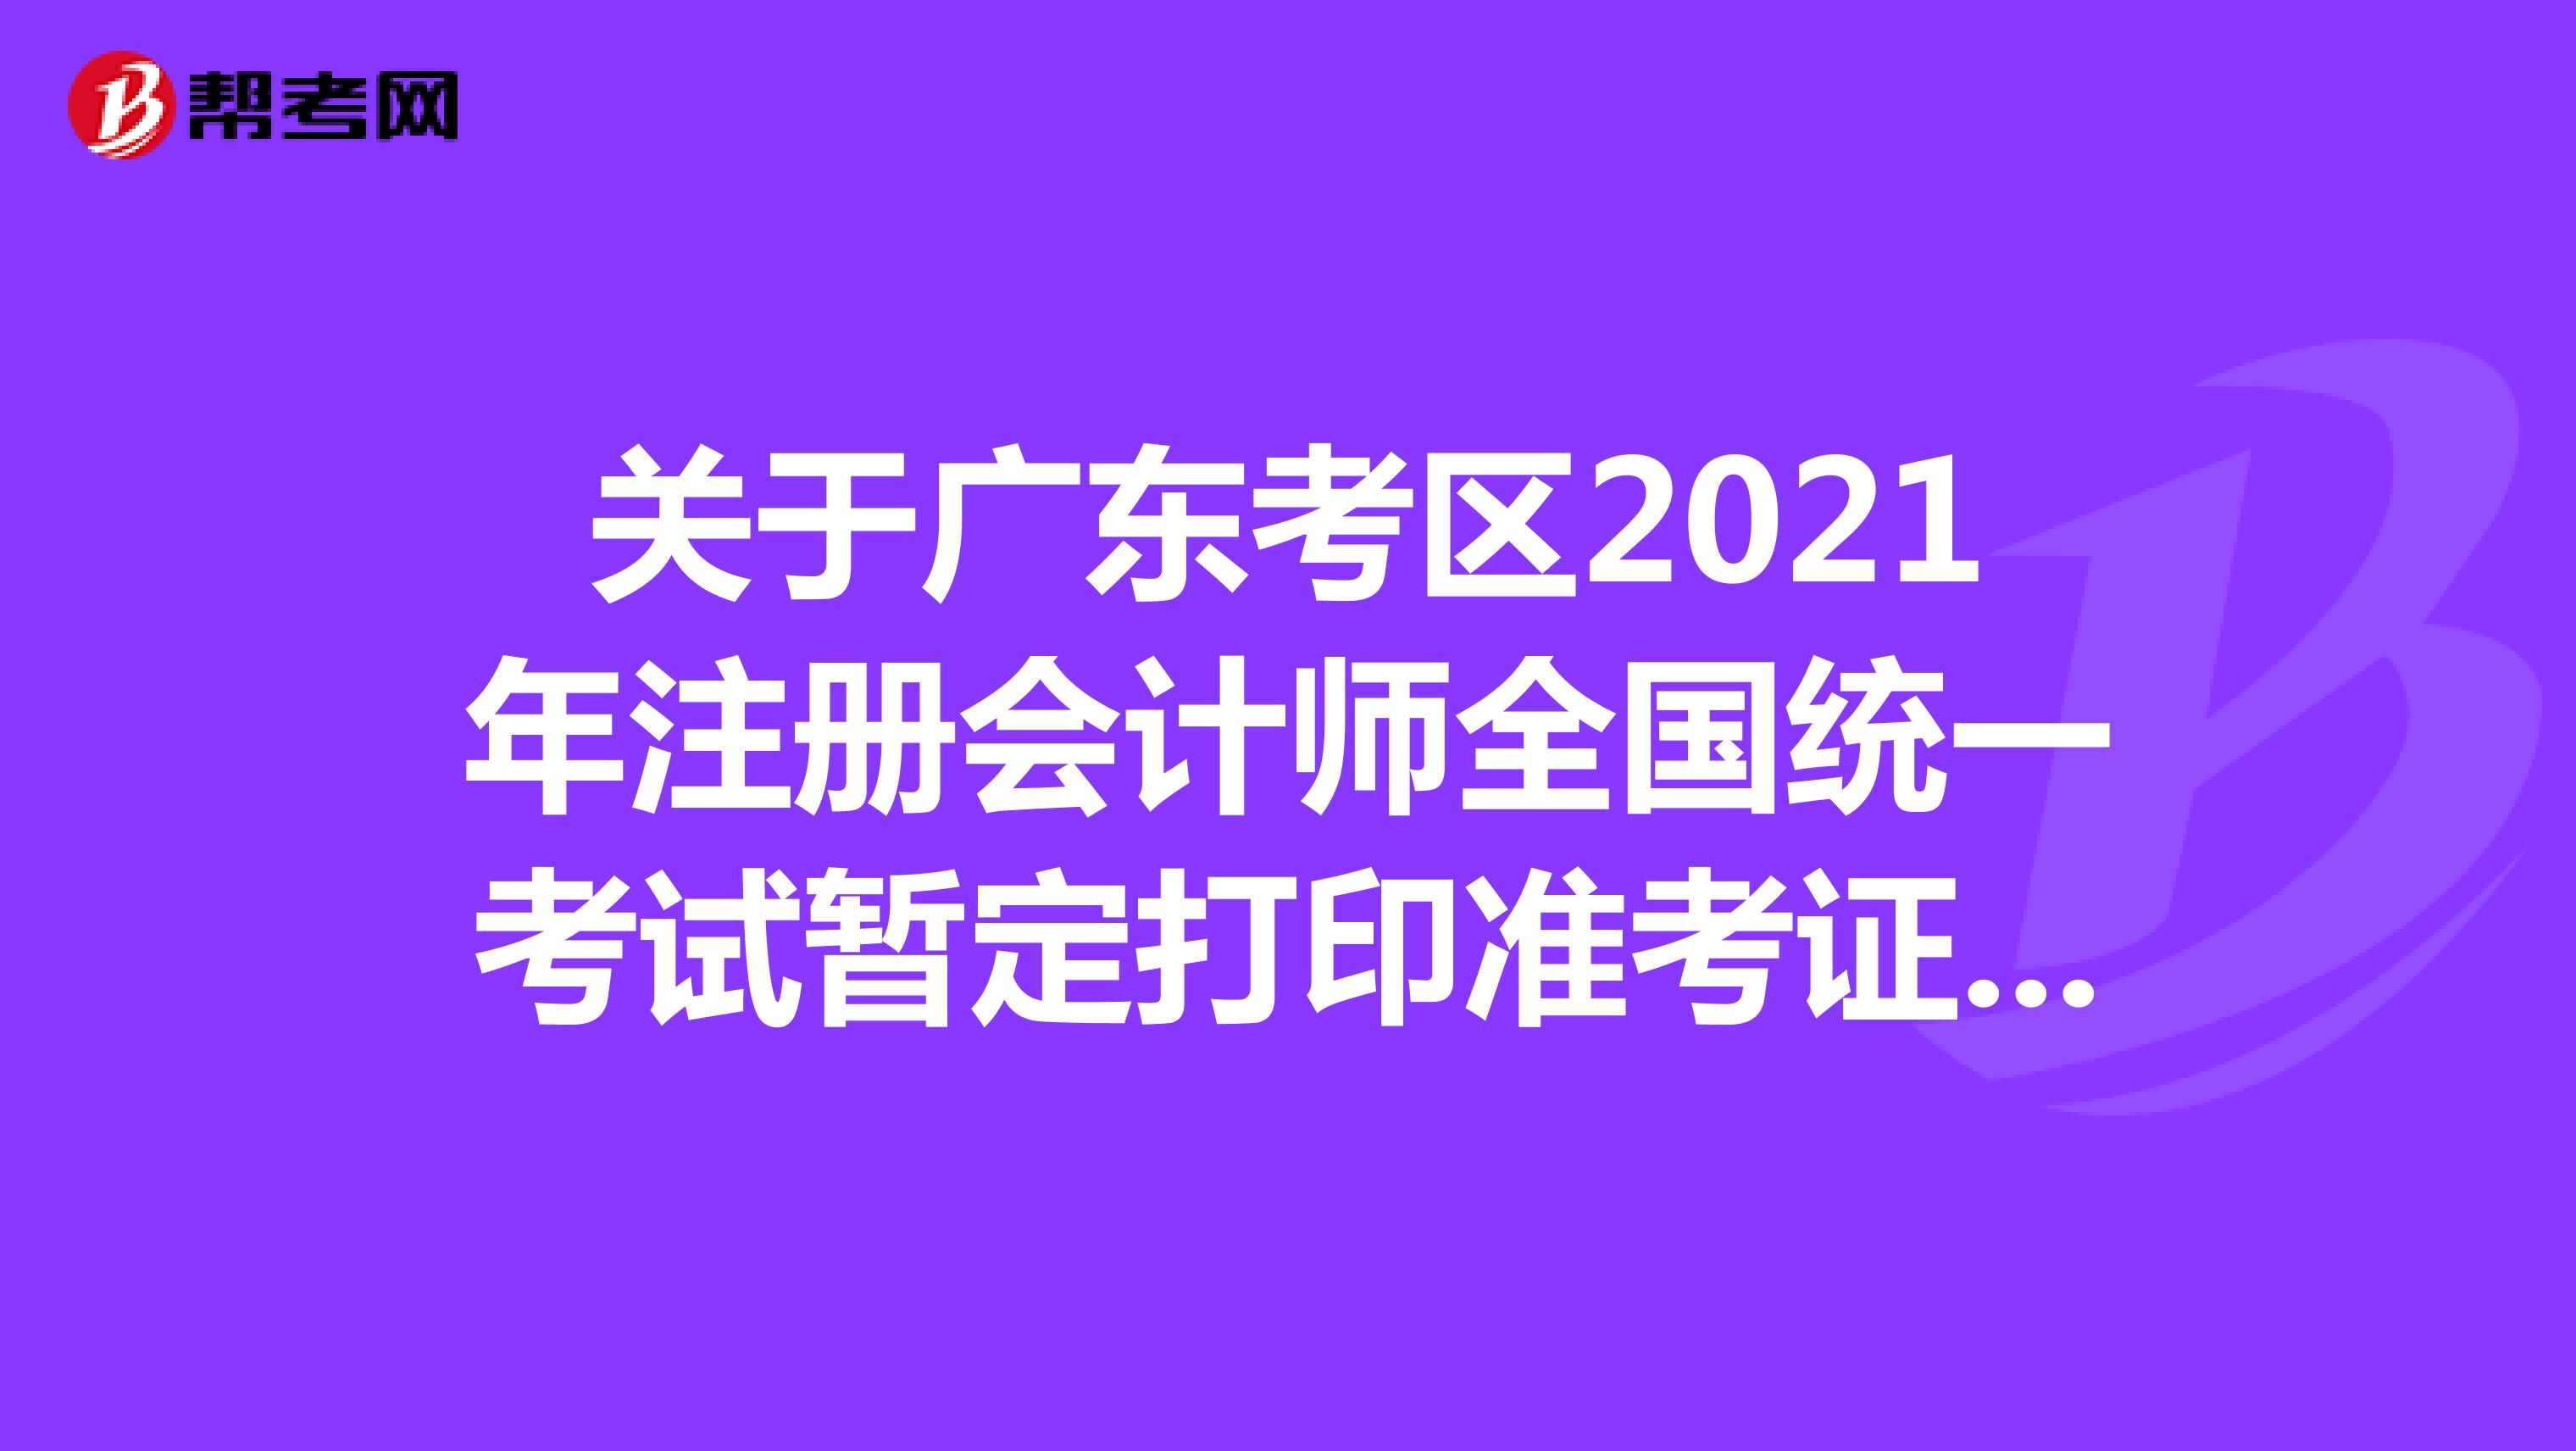 关于广东考区2021年注册会计师全国统一考试暂定打印准考证的紧急通知